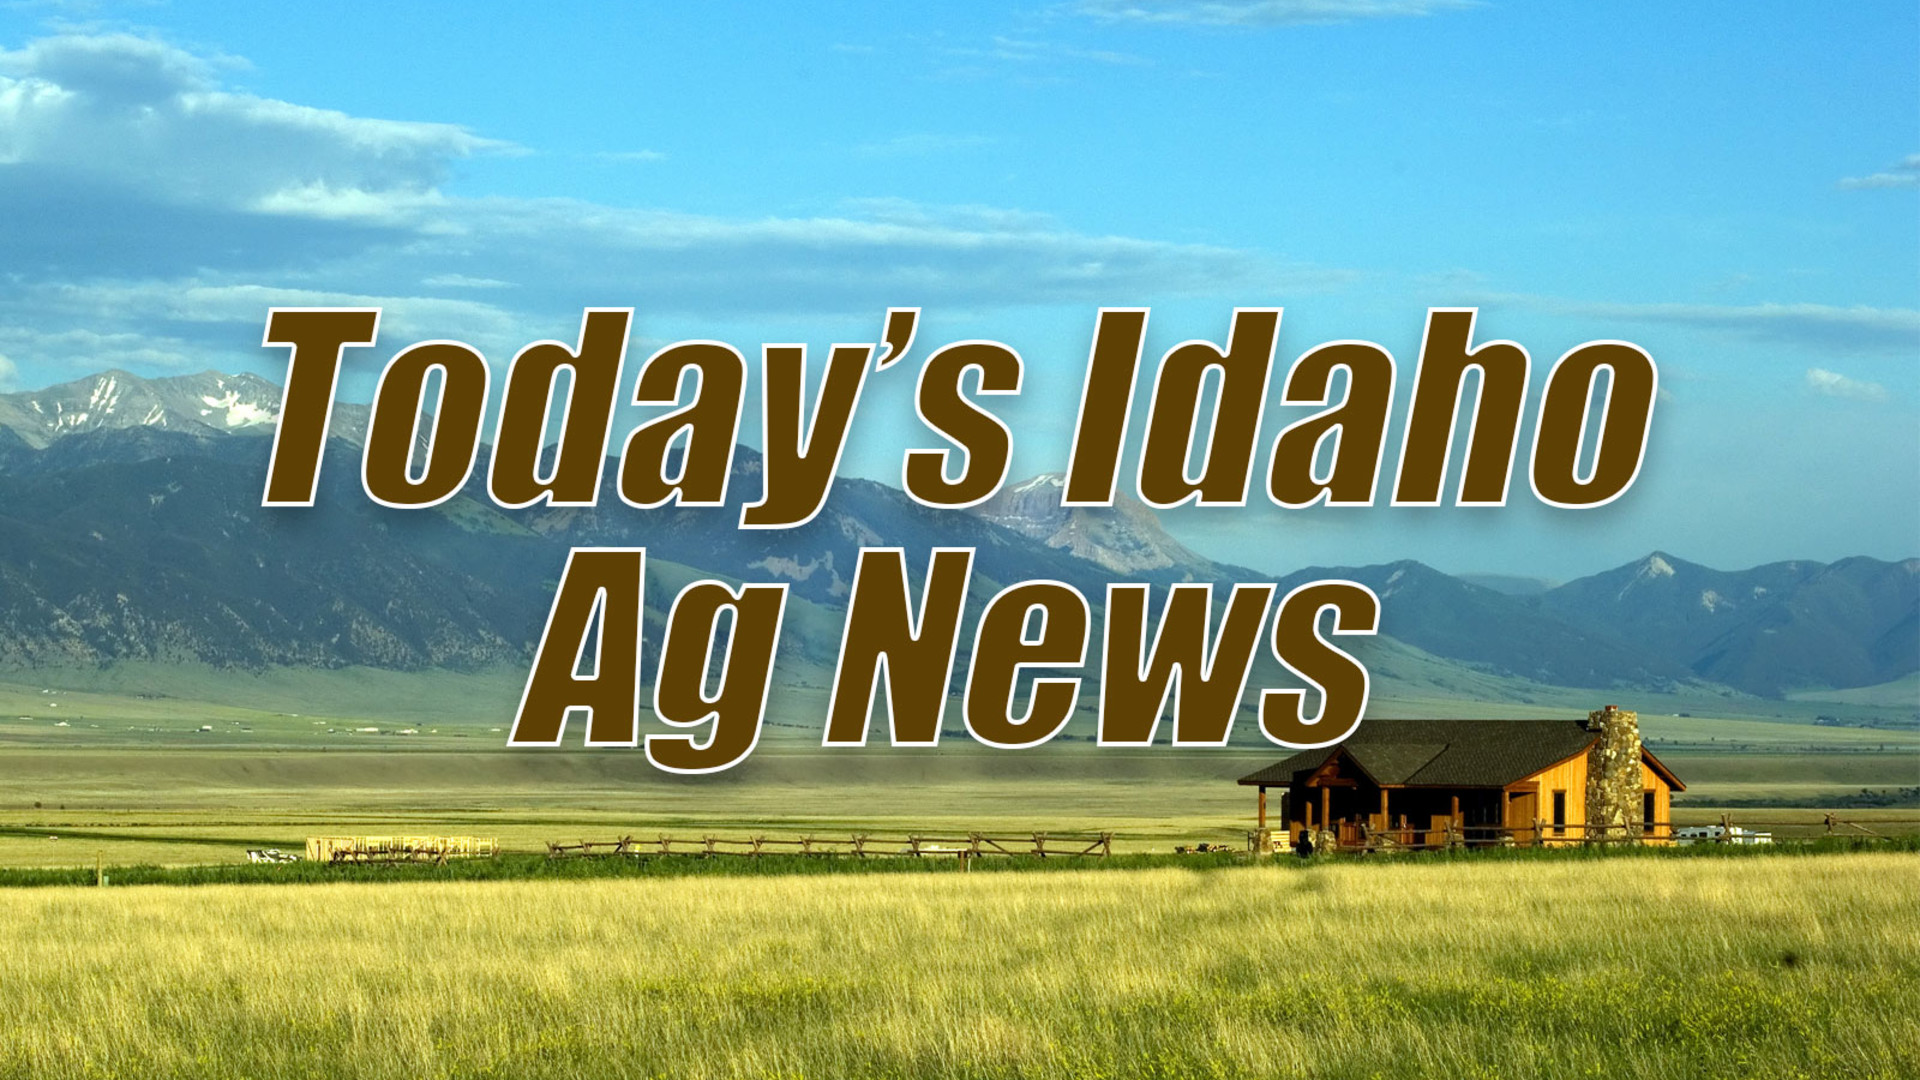 Today's Idaho Ag News